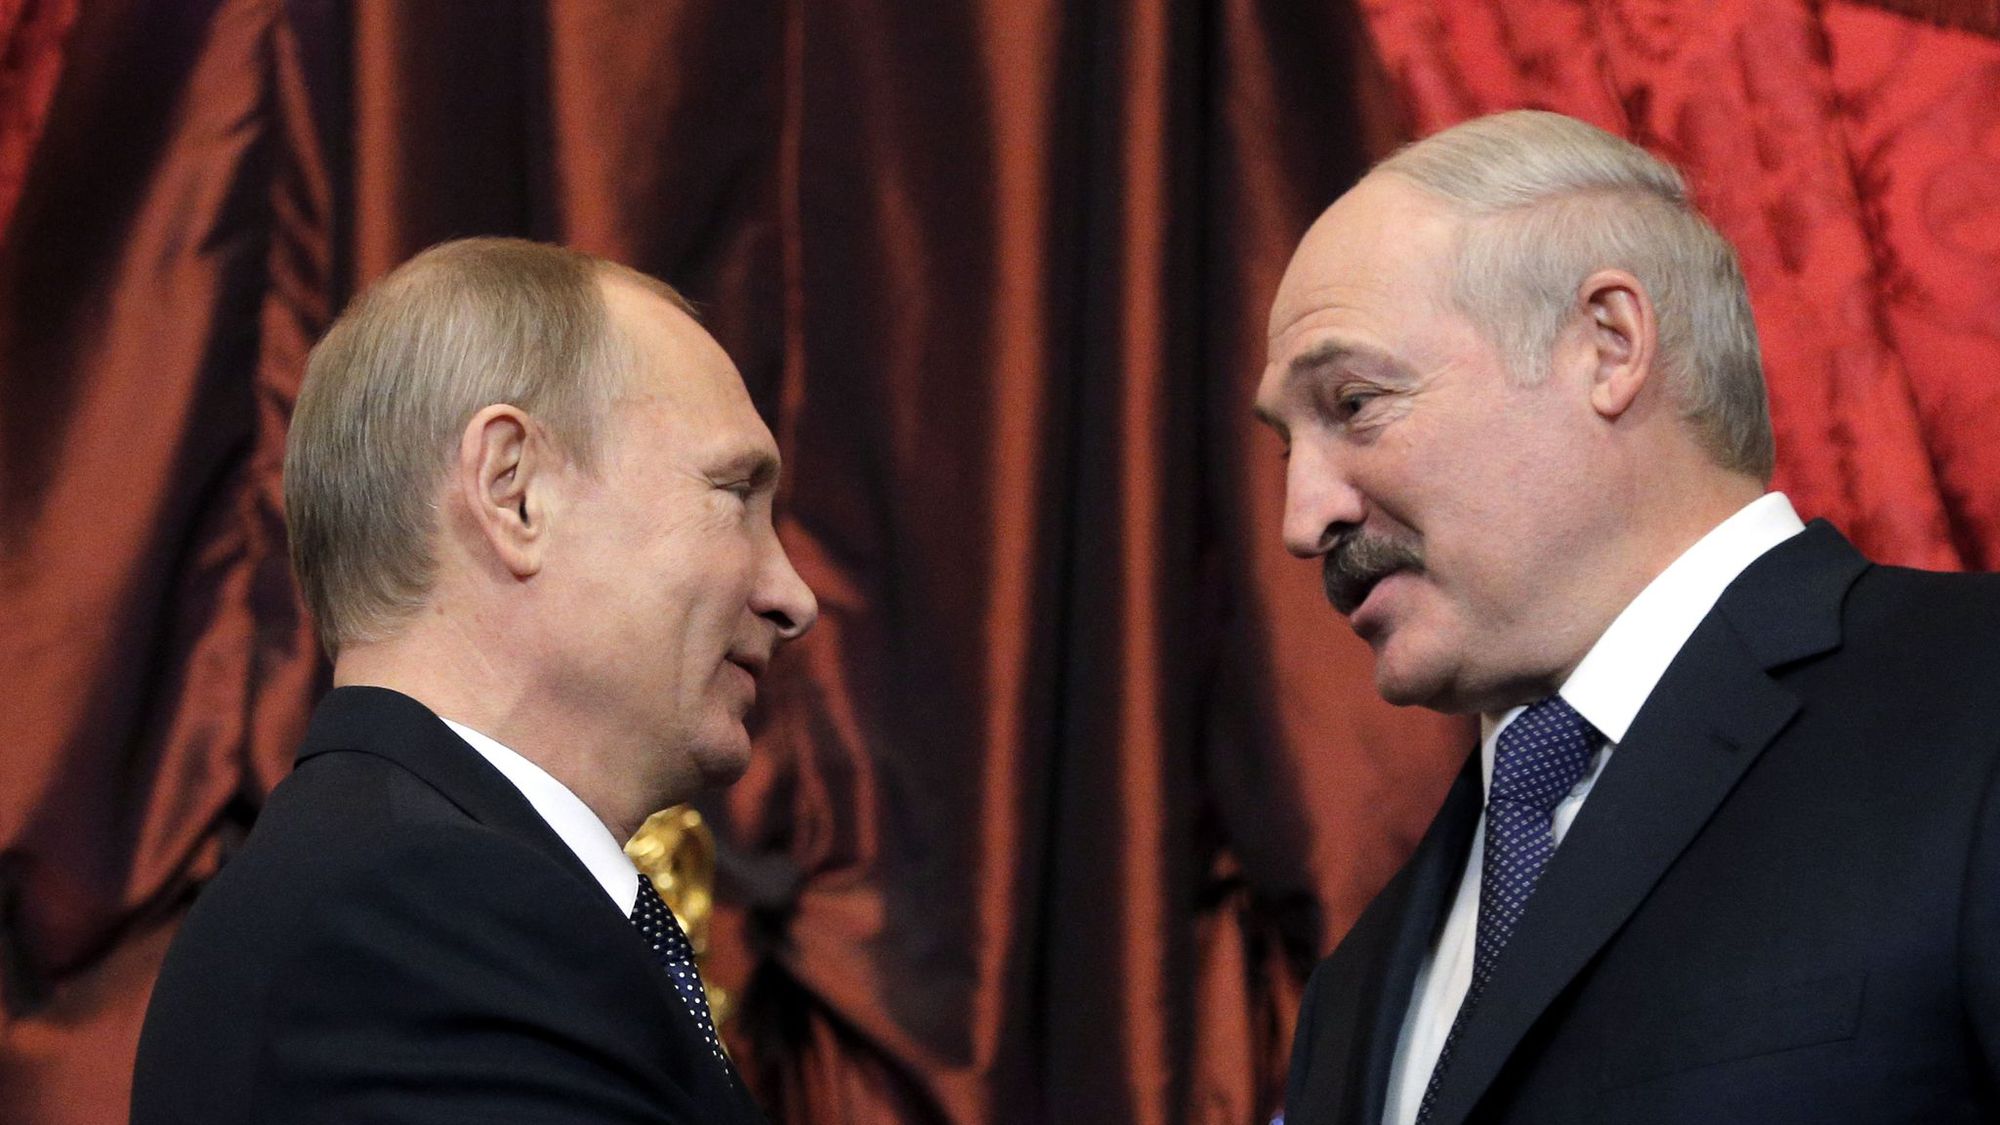 رئيس بيلاروسيا ألكسندر لوكاشينكو (يمين) ونظيره الروسي فلاديمير بوتين في لقاء جمعهما في 23 ديسمبر 2014 في موسكو